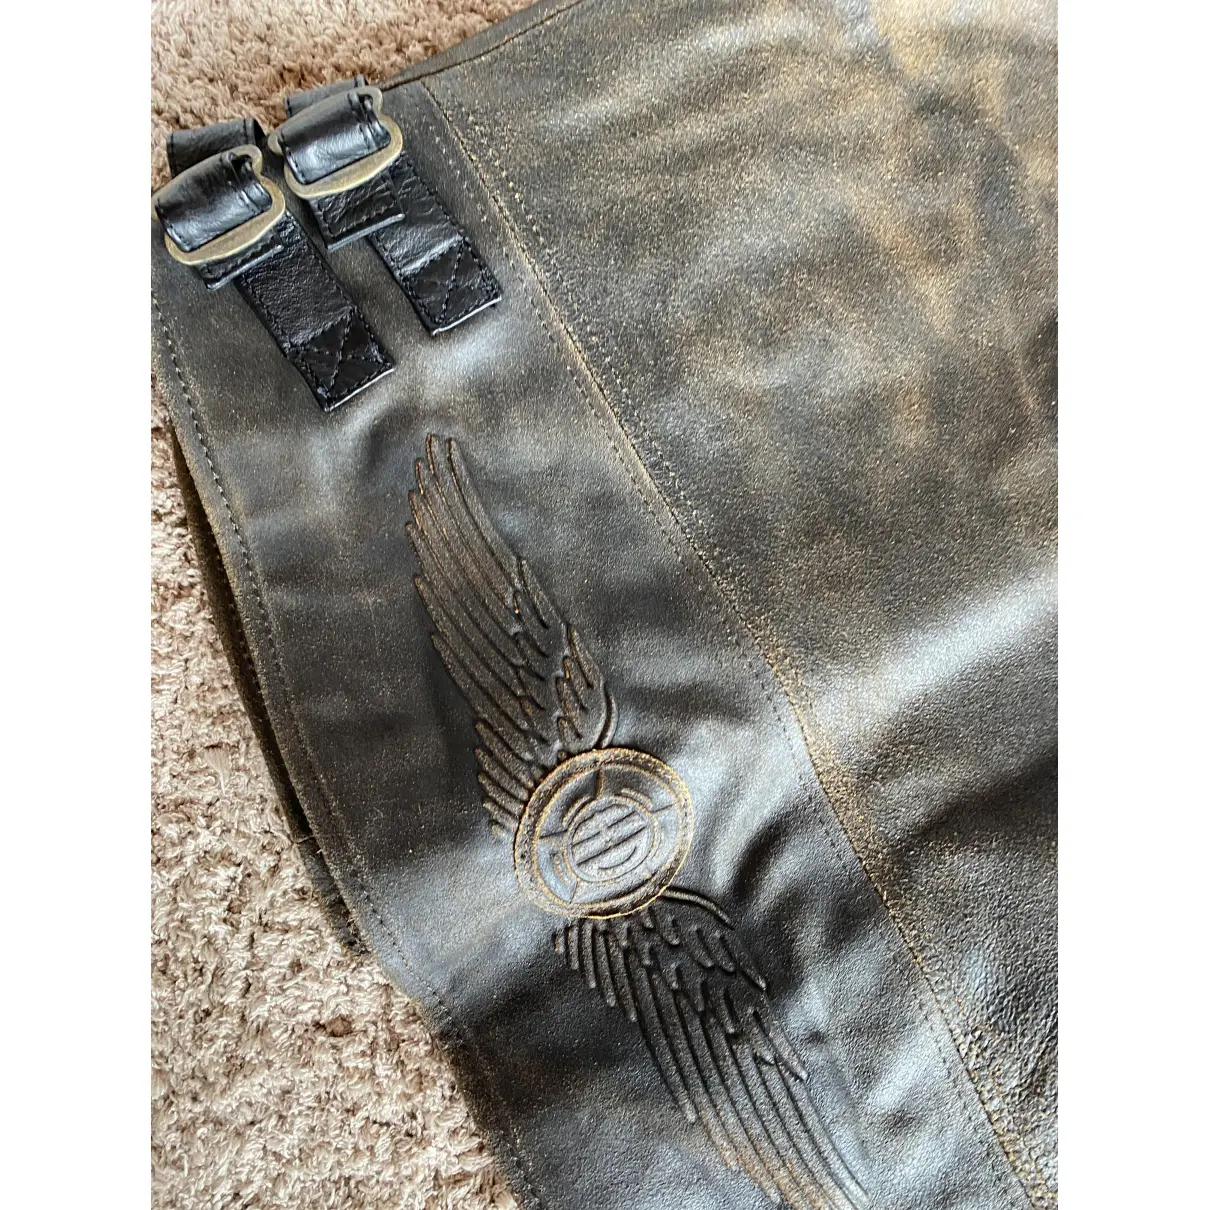 Leather vest HARLEY DAVIDSON - Vintage